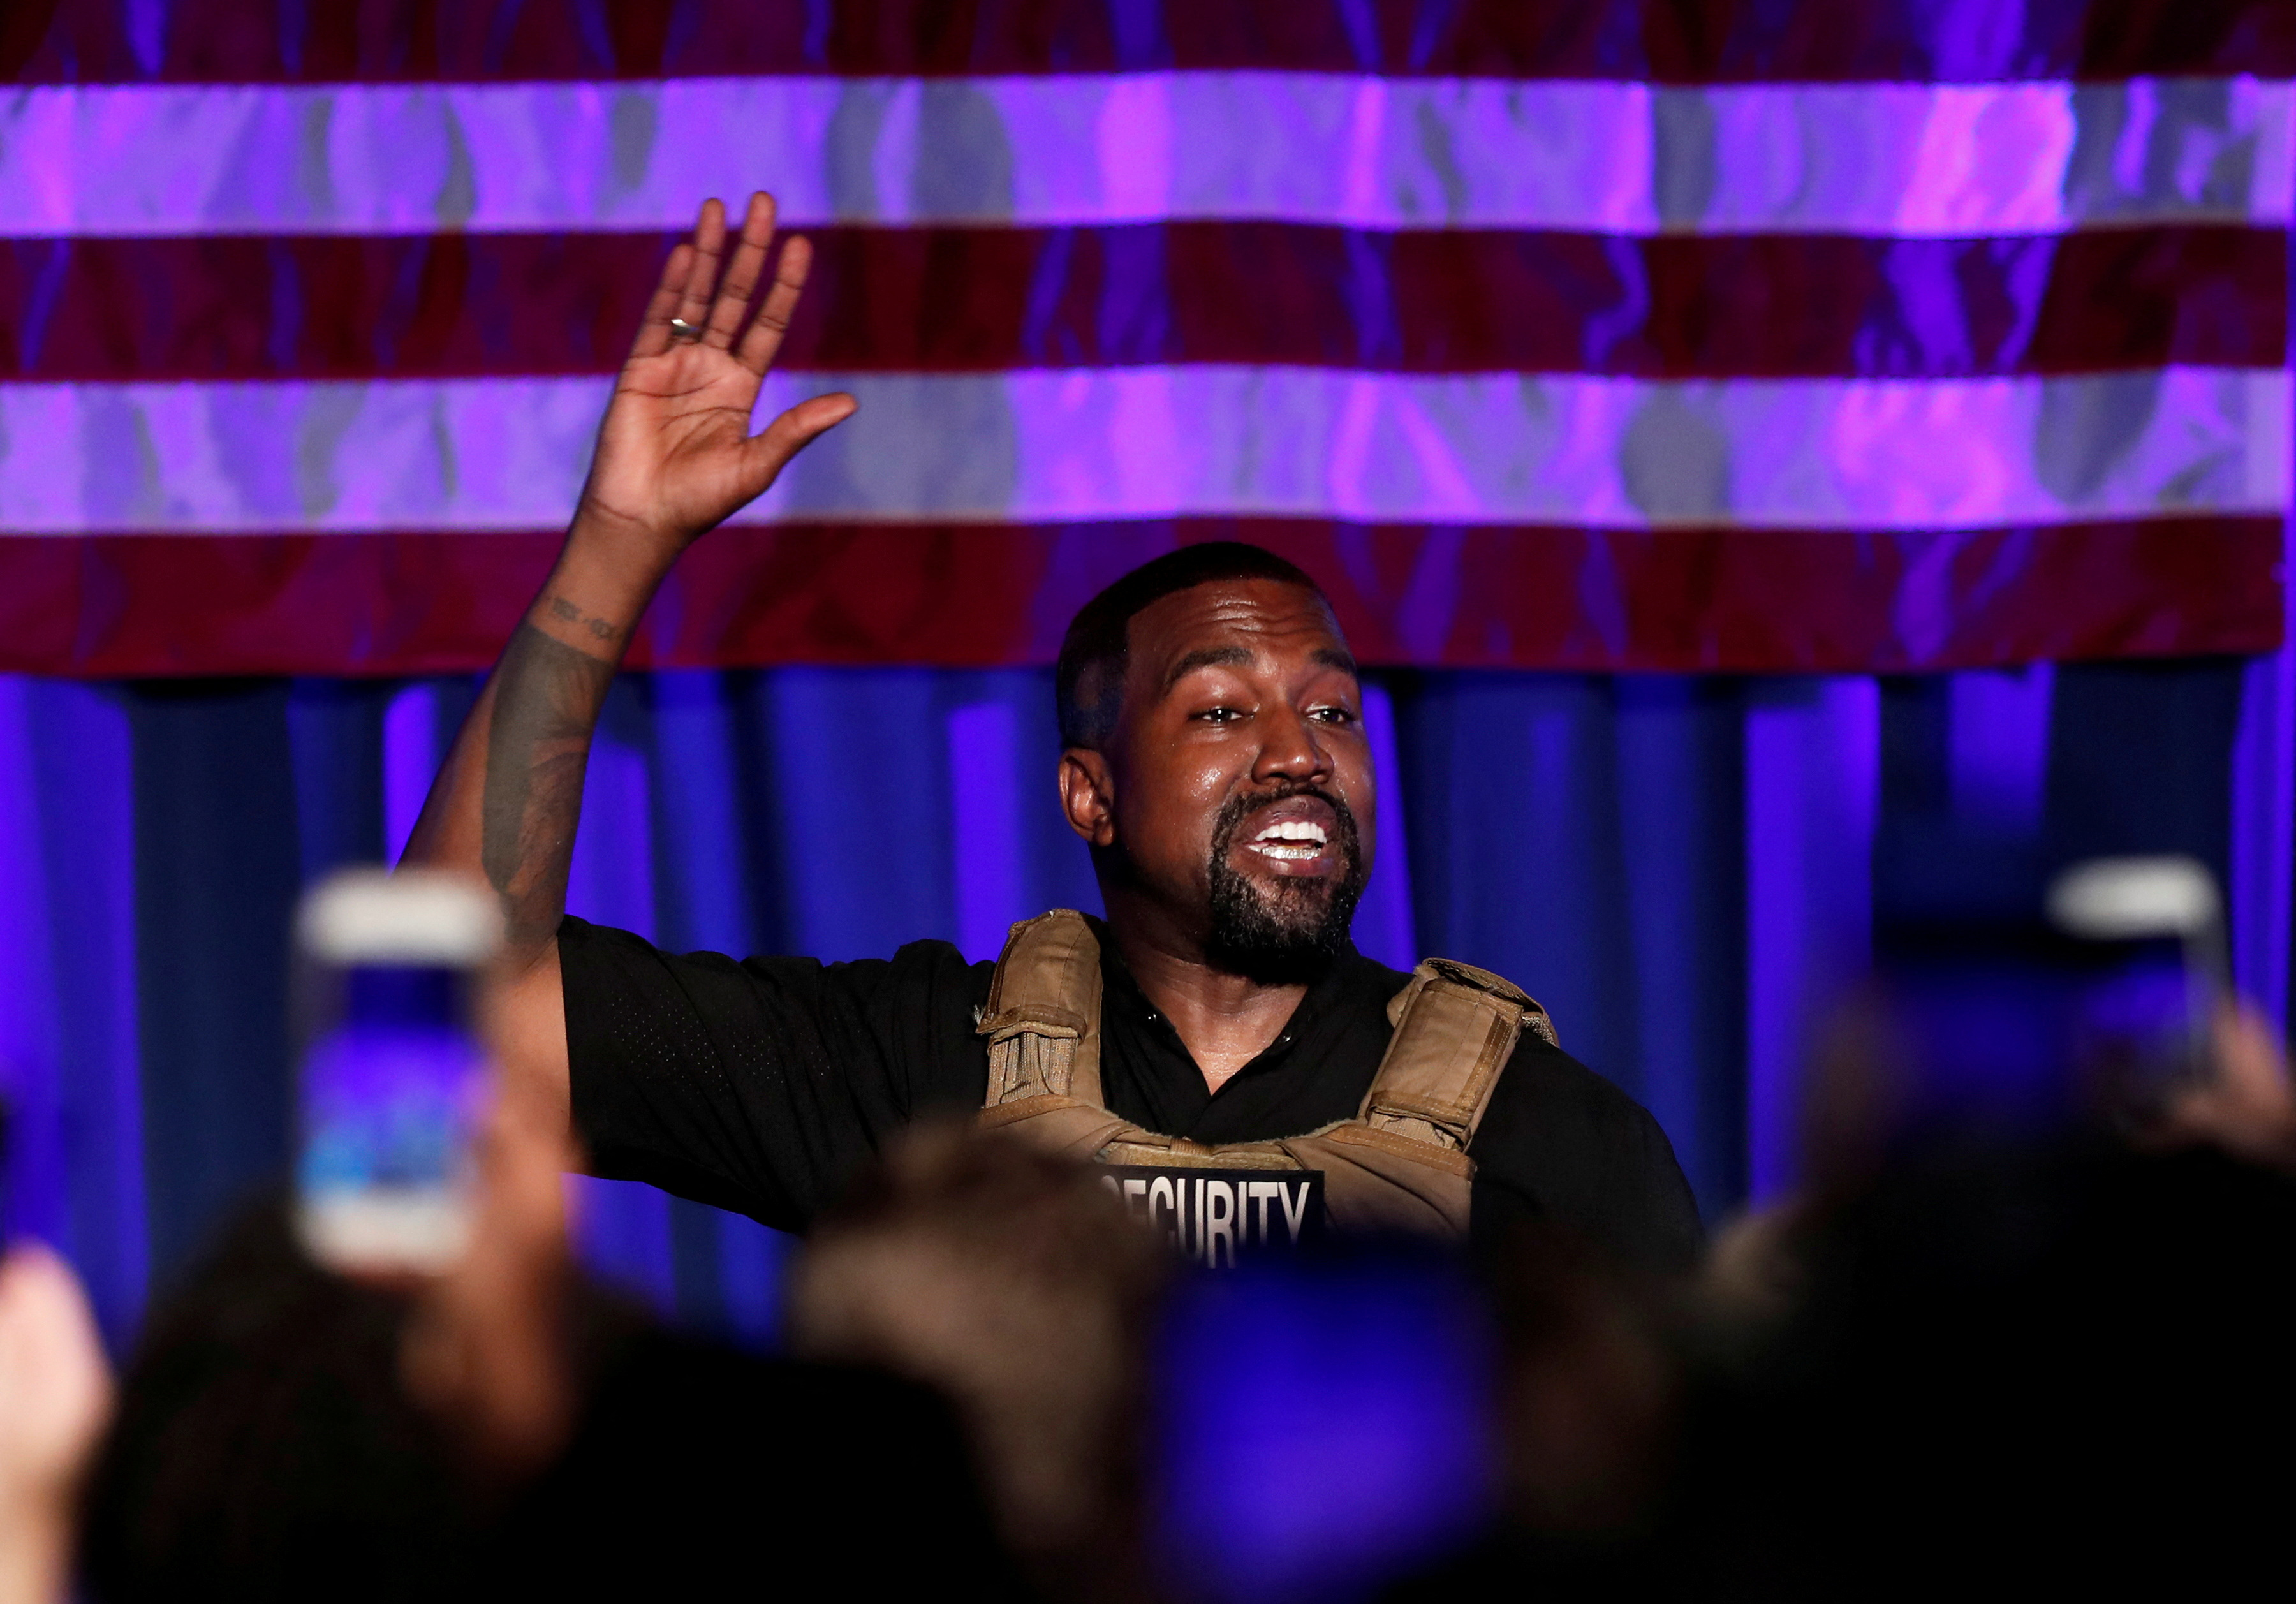 FOTO DE ARCHIVO: El rapero Kanye West celebra su primer mitin en apoyo de su candidatura presidencial en North Charleston, Carolina del Sur, EE. UU., el 19 de julio de 2020. REUTERS/Randall Hill/File Photo
